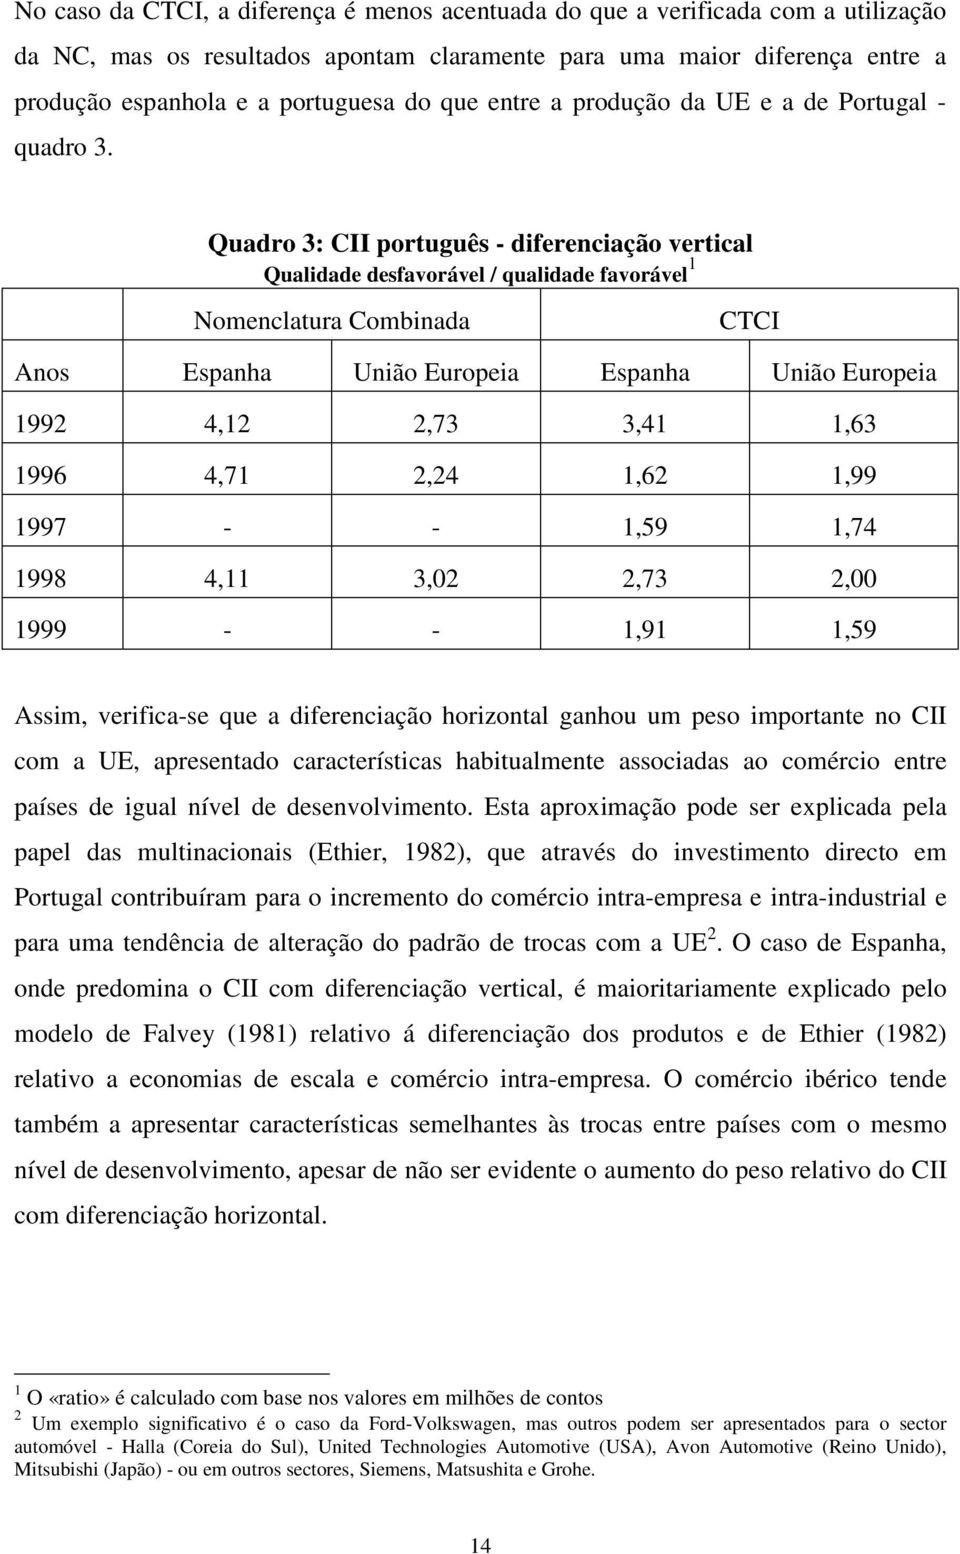 Quadro 3: CII português - diferenciação vertical Qualidade desfavorável / qualidade favorável 1 Nomenclatura Combinada CTCI Anos Espanha União Europeia Espanha União Europeia 1992 4,12 2,73 3,41 1,63